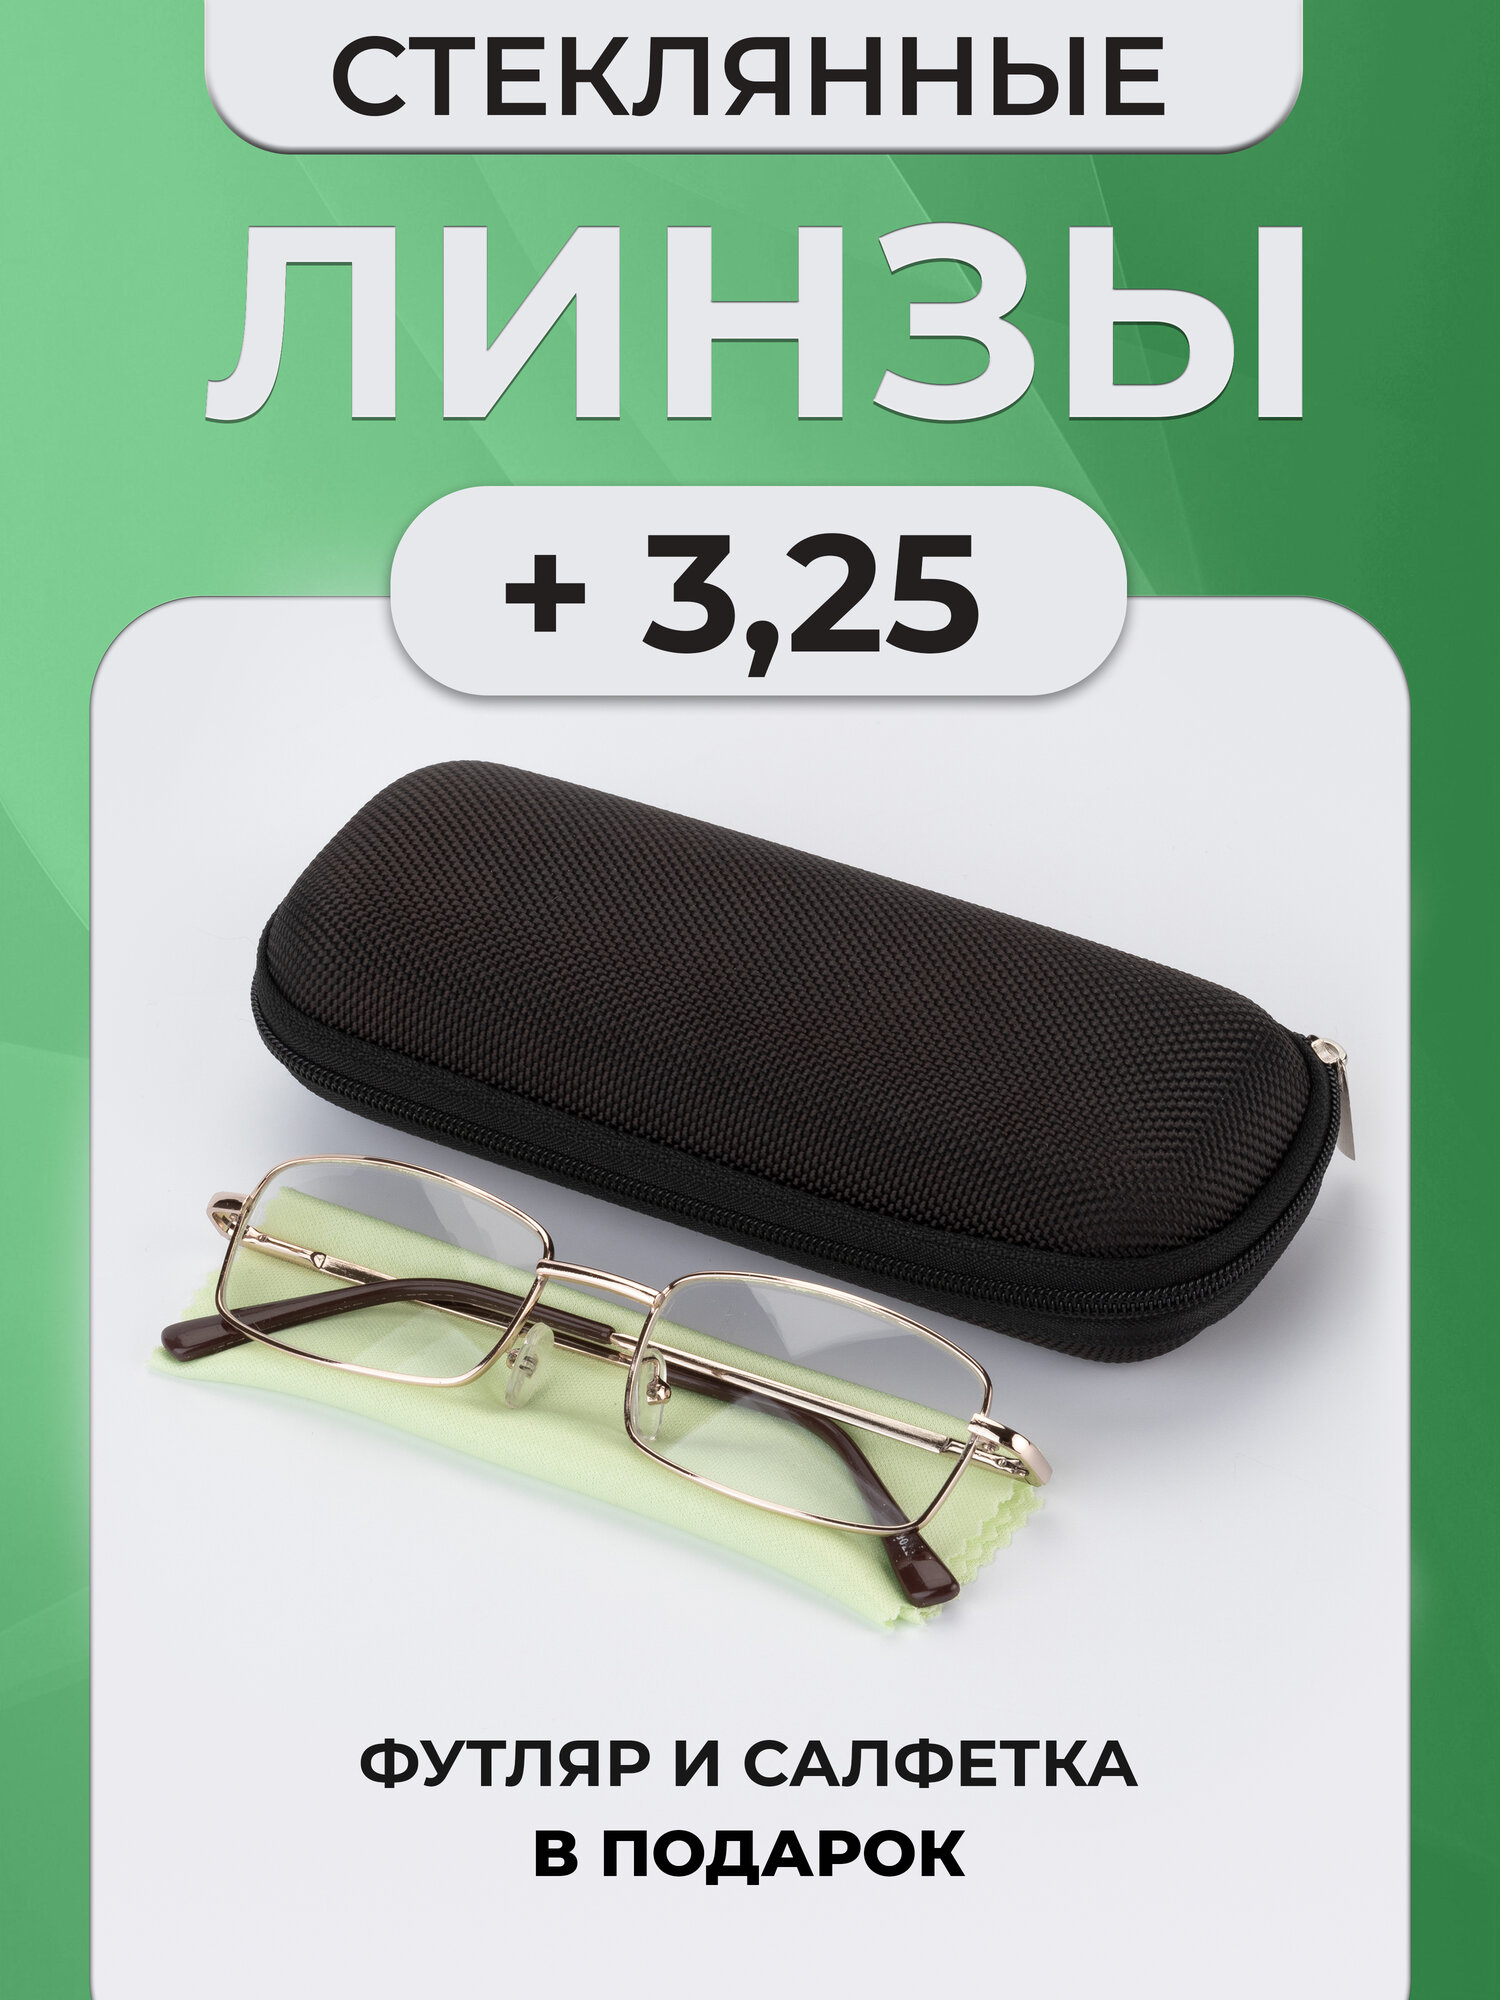 Готовые очки для зрения с диоптриями +3,25